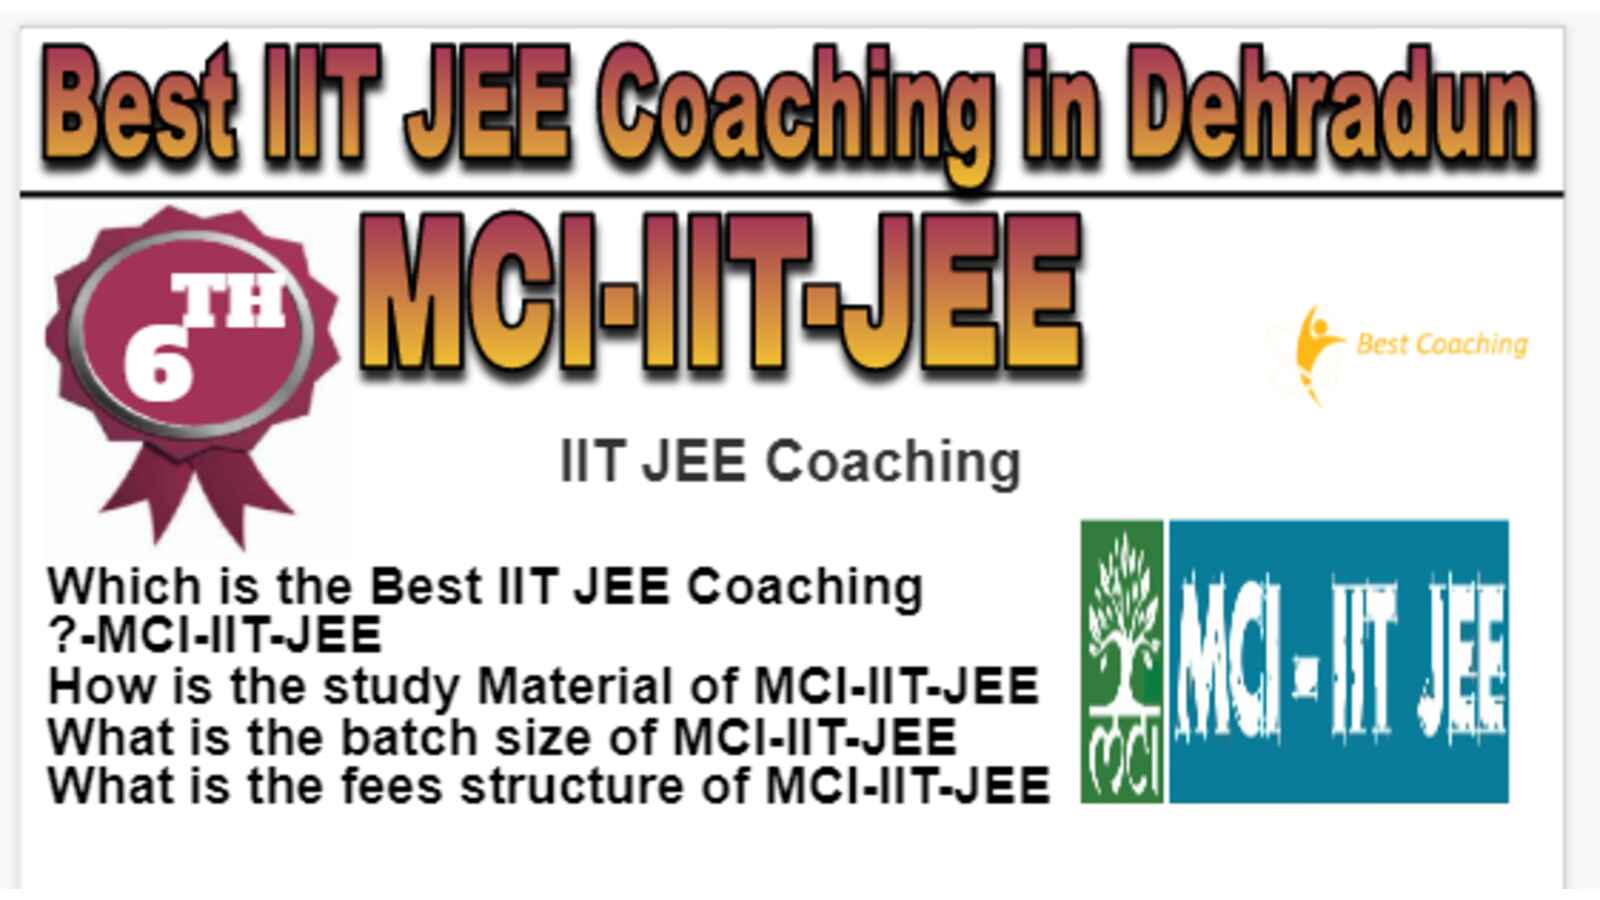 Rank 6 Best IIT JEE Coaching in Dehradun